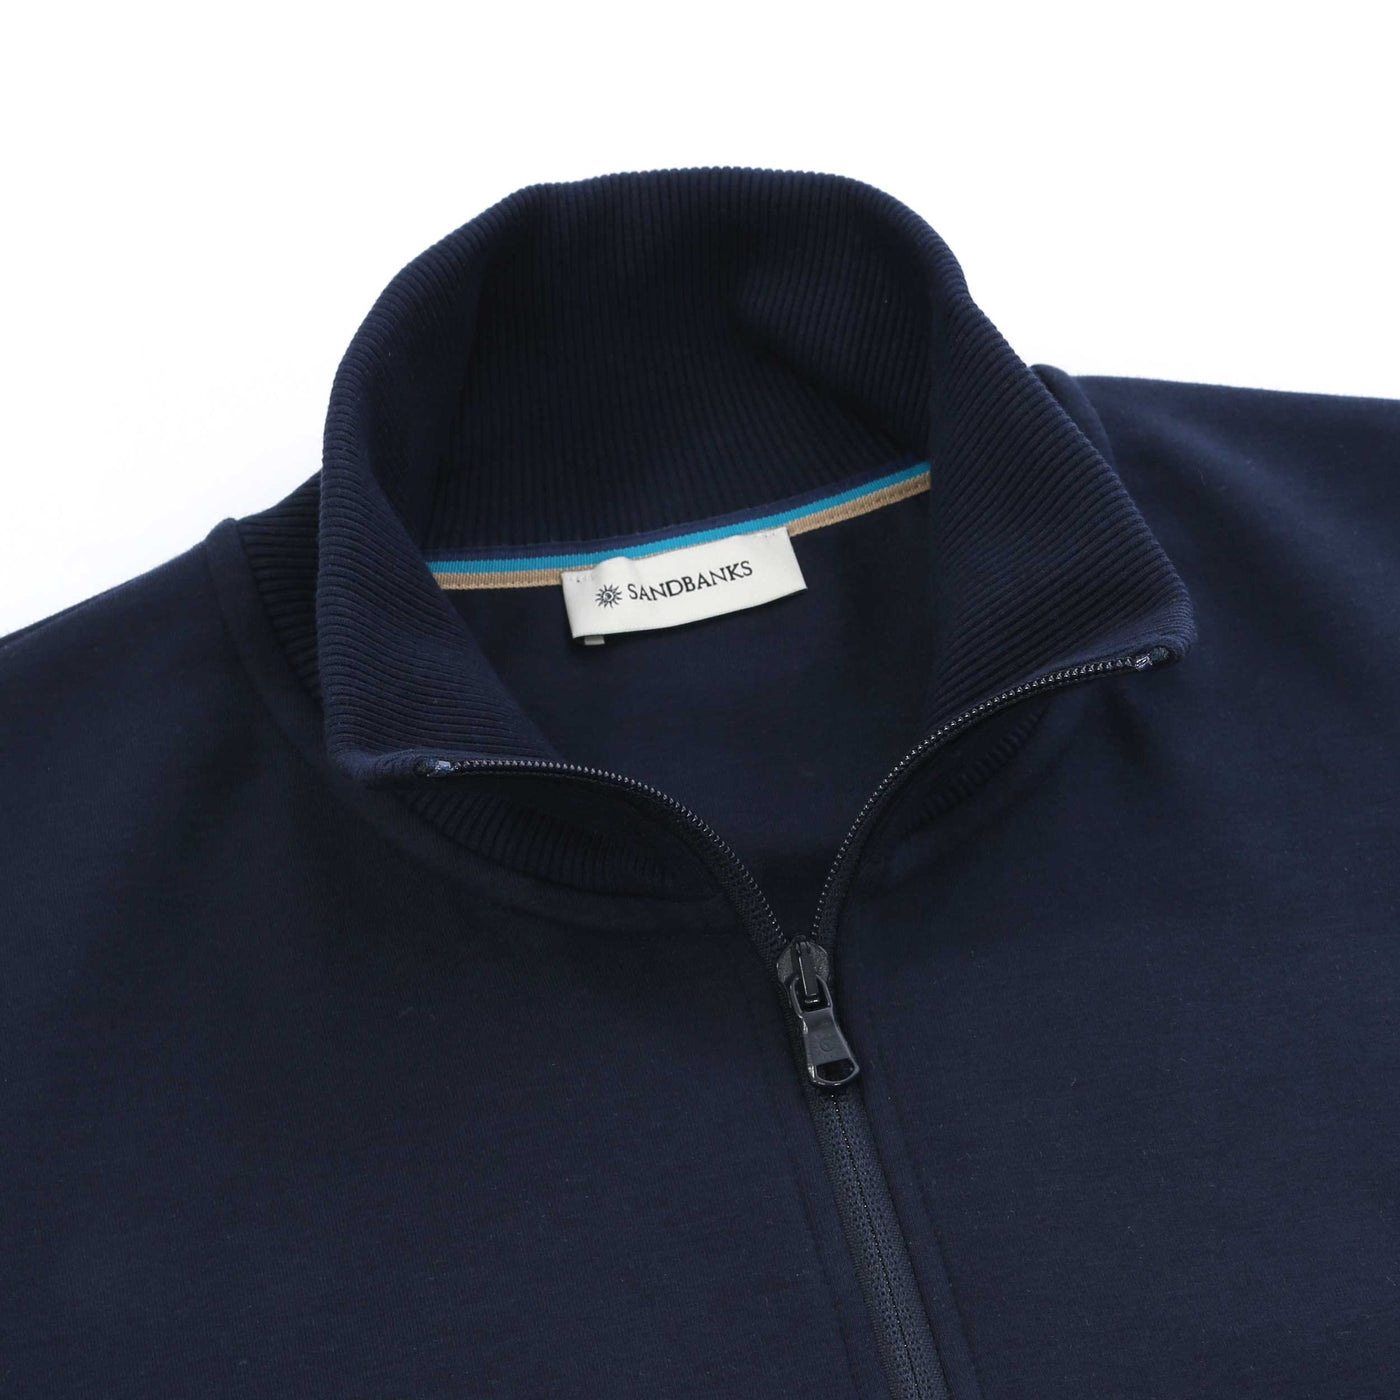 Sandbanks Interlock 1/4 Zip Sweatshirt in Navy Zip